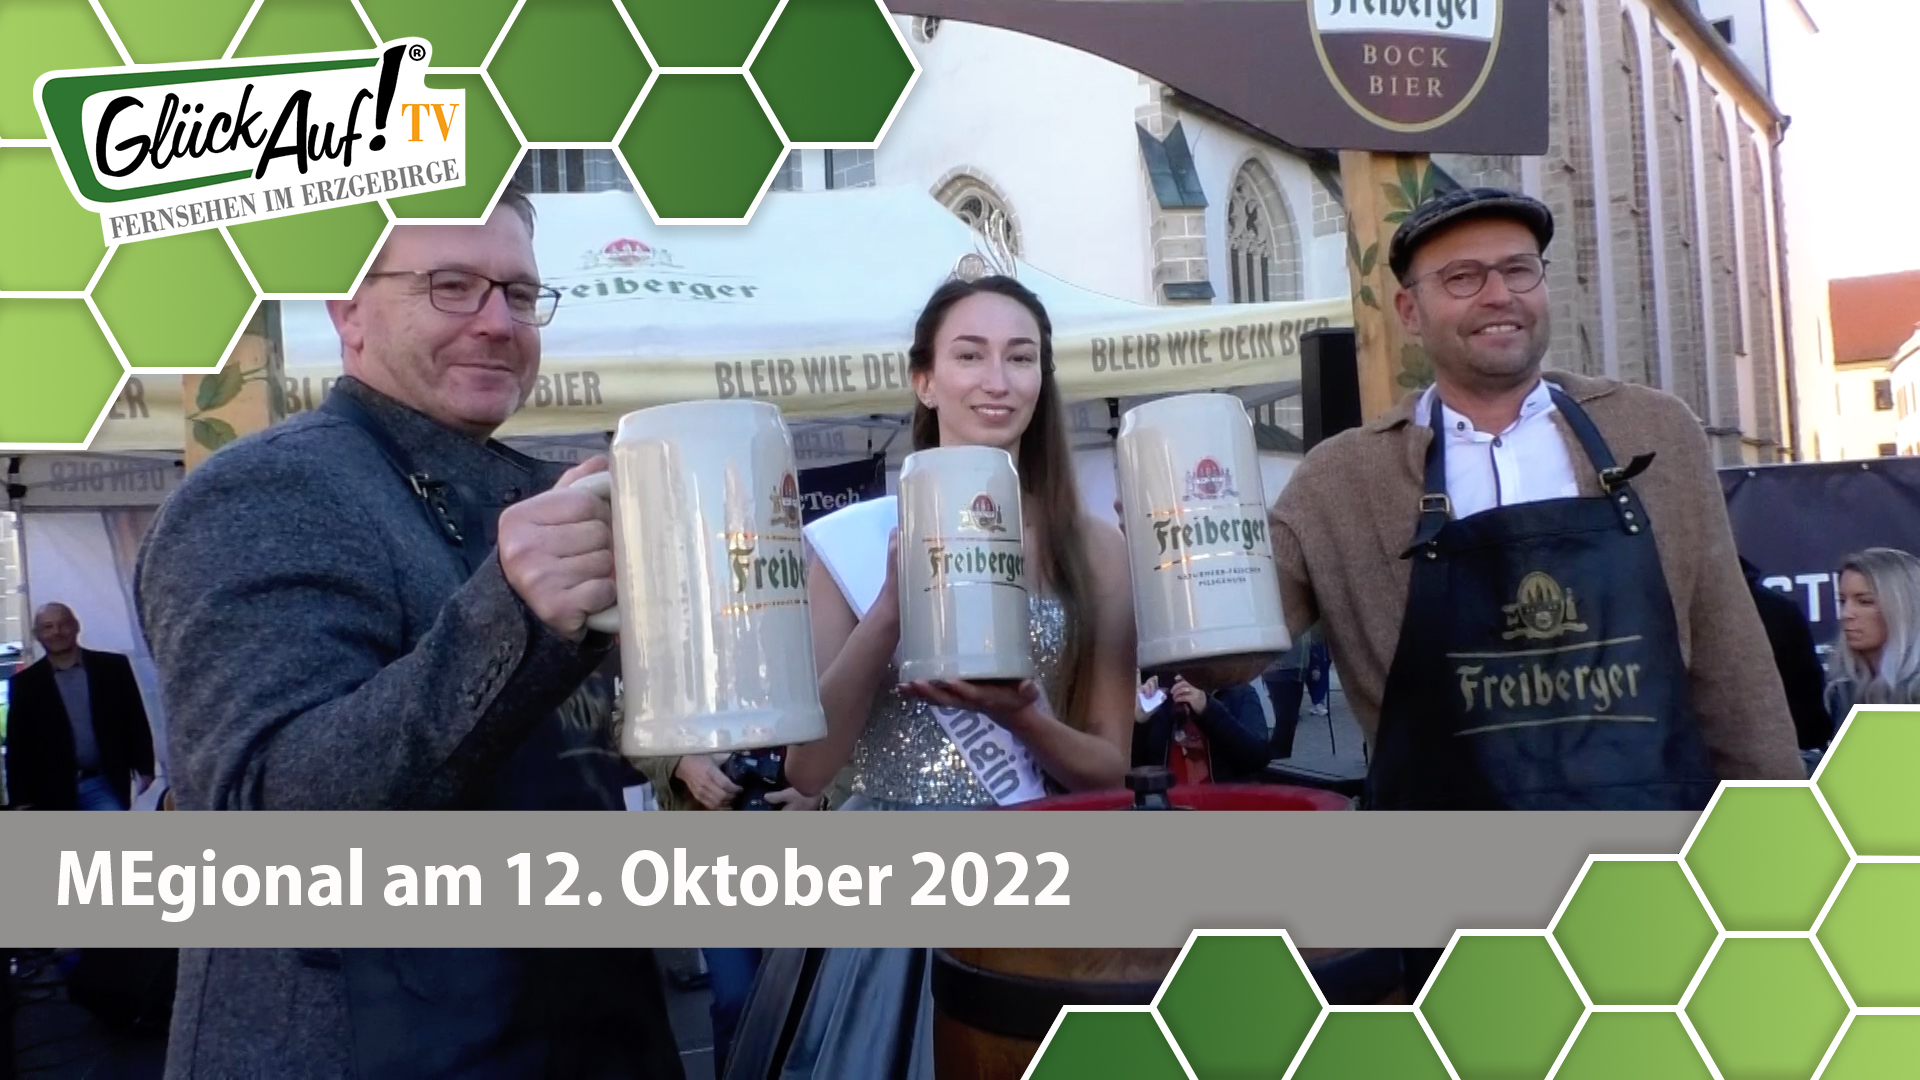 MEgional am 12. Oktober 2022 - mit dem Herbstfest in Freiberg